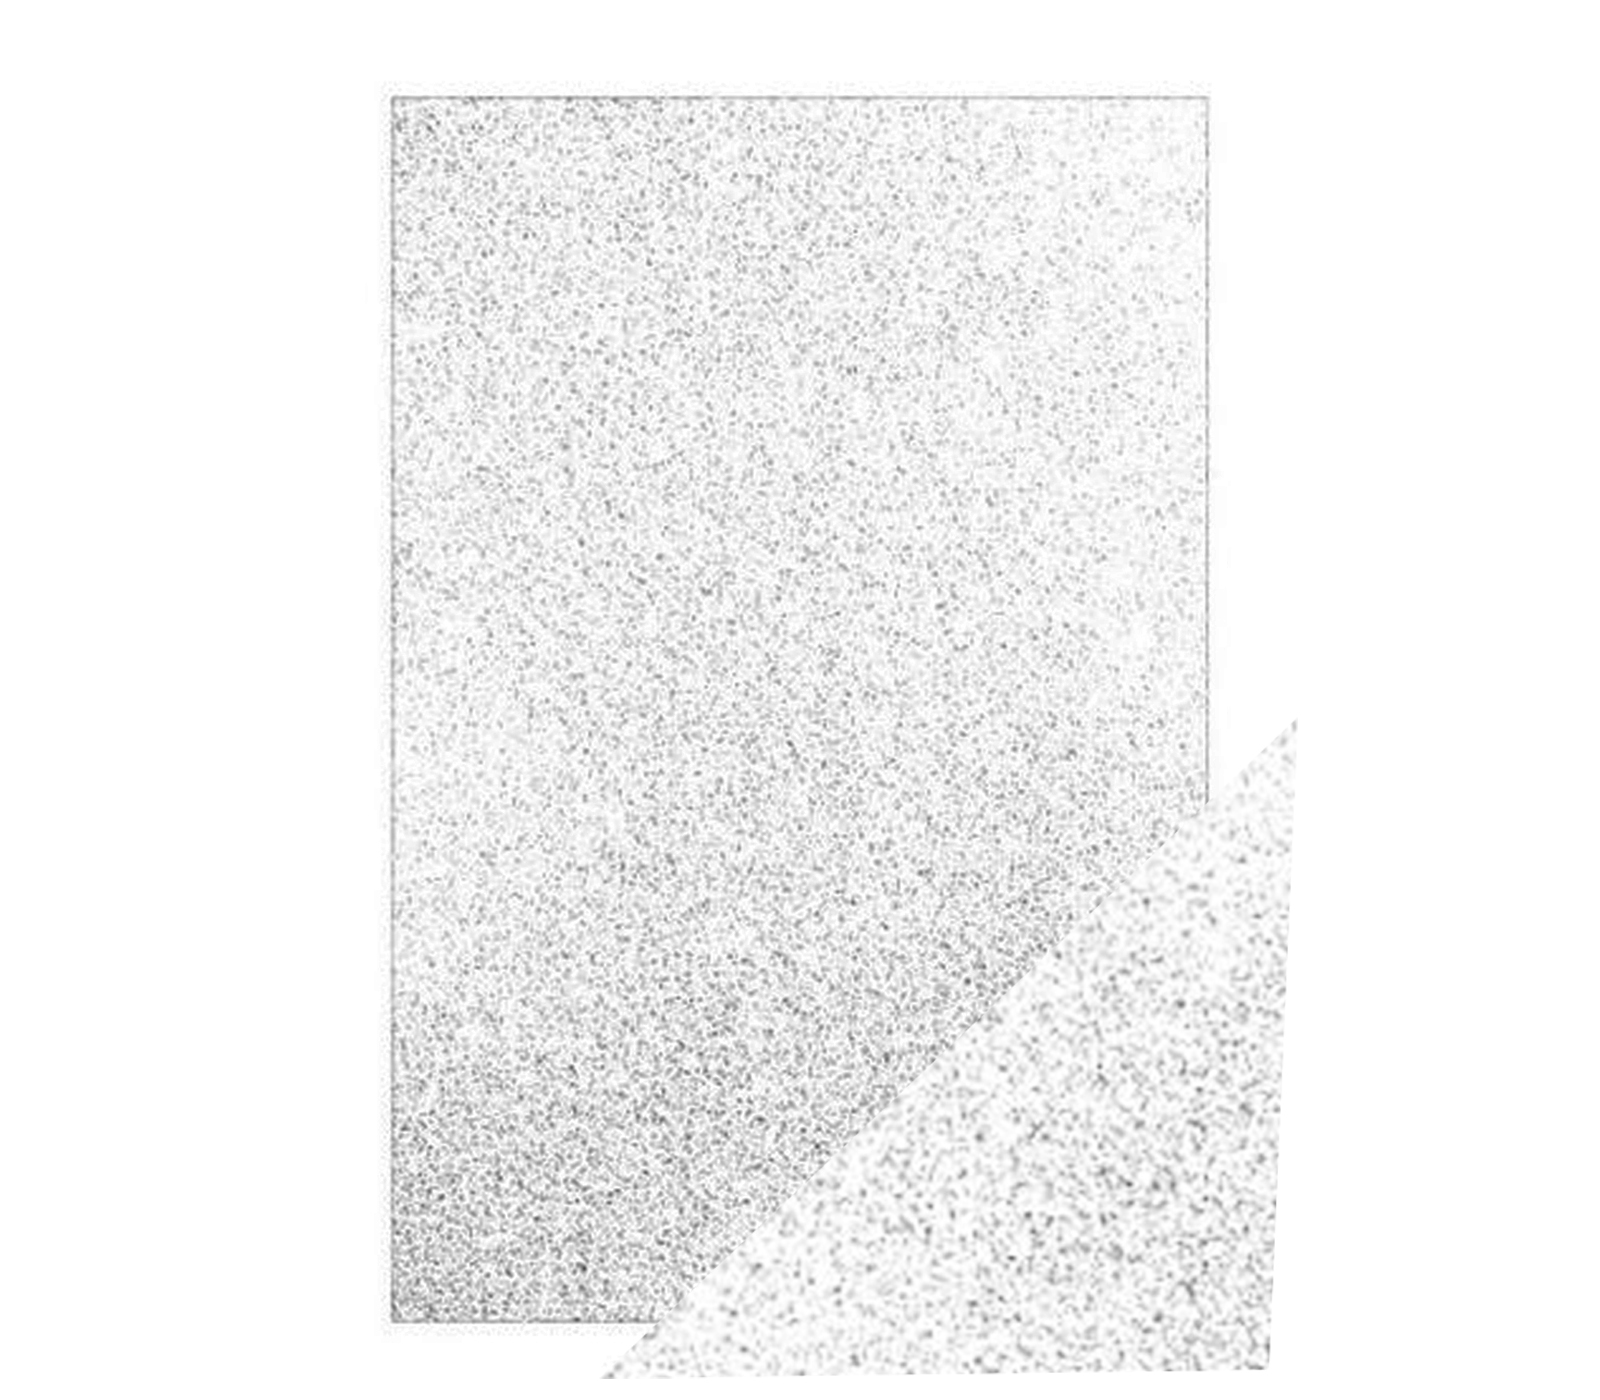 Foglio gomma eva glitterata morbido 10pz 60x40cm bianco decorazioni